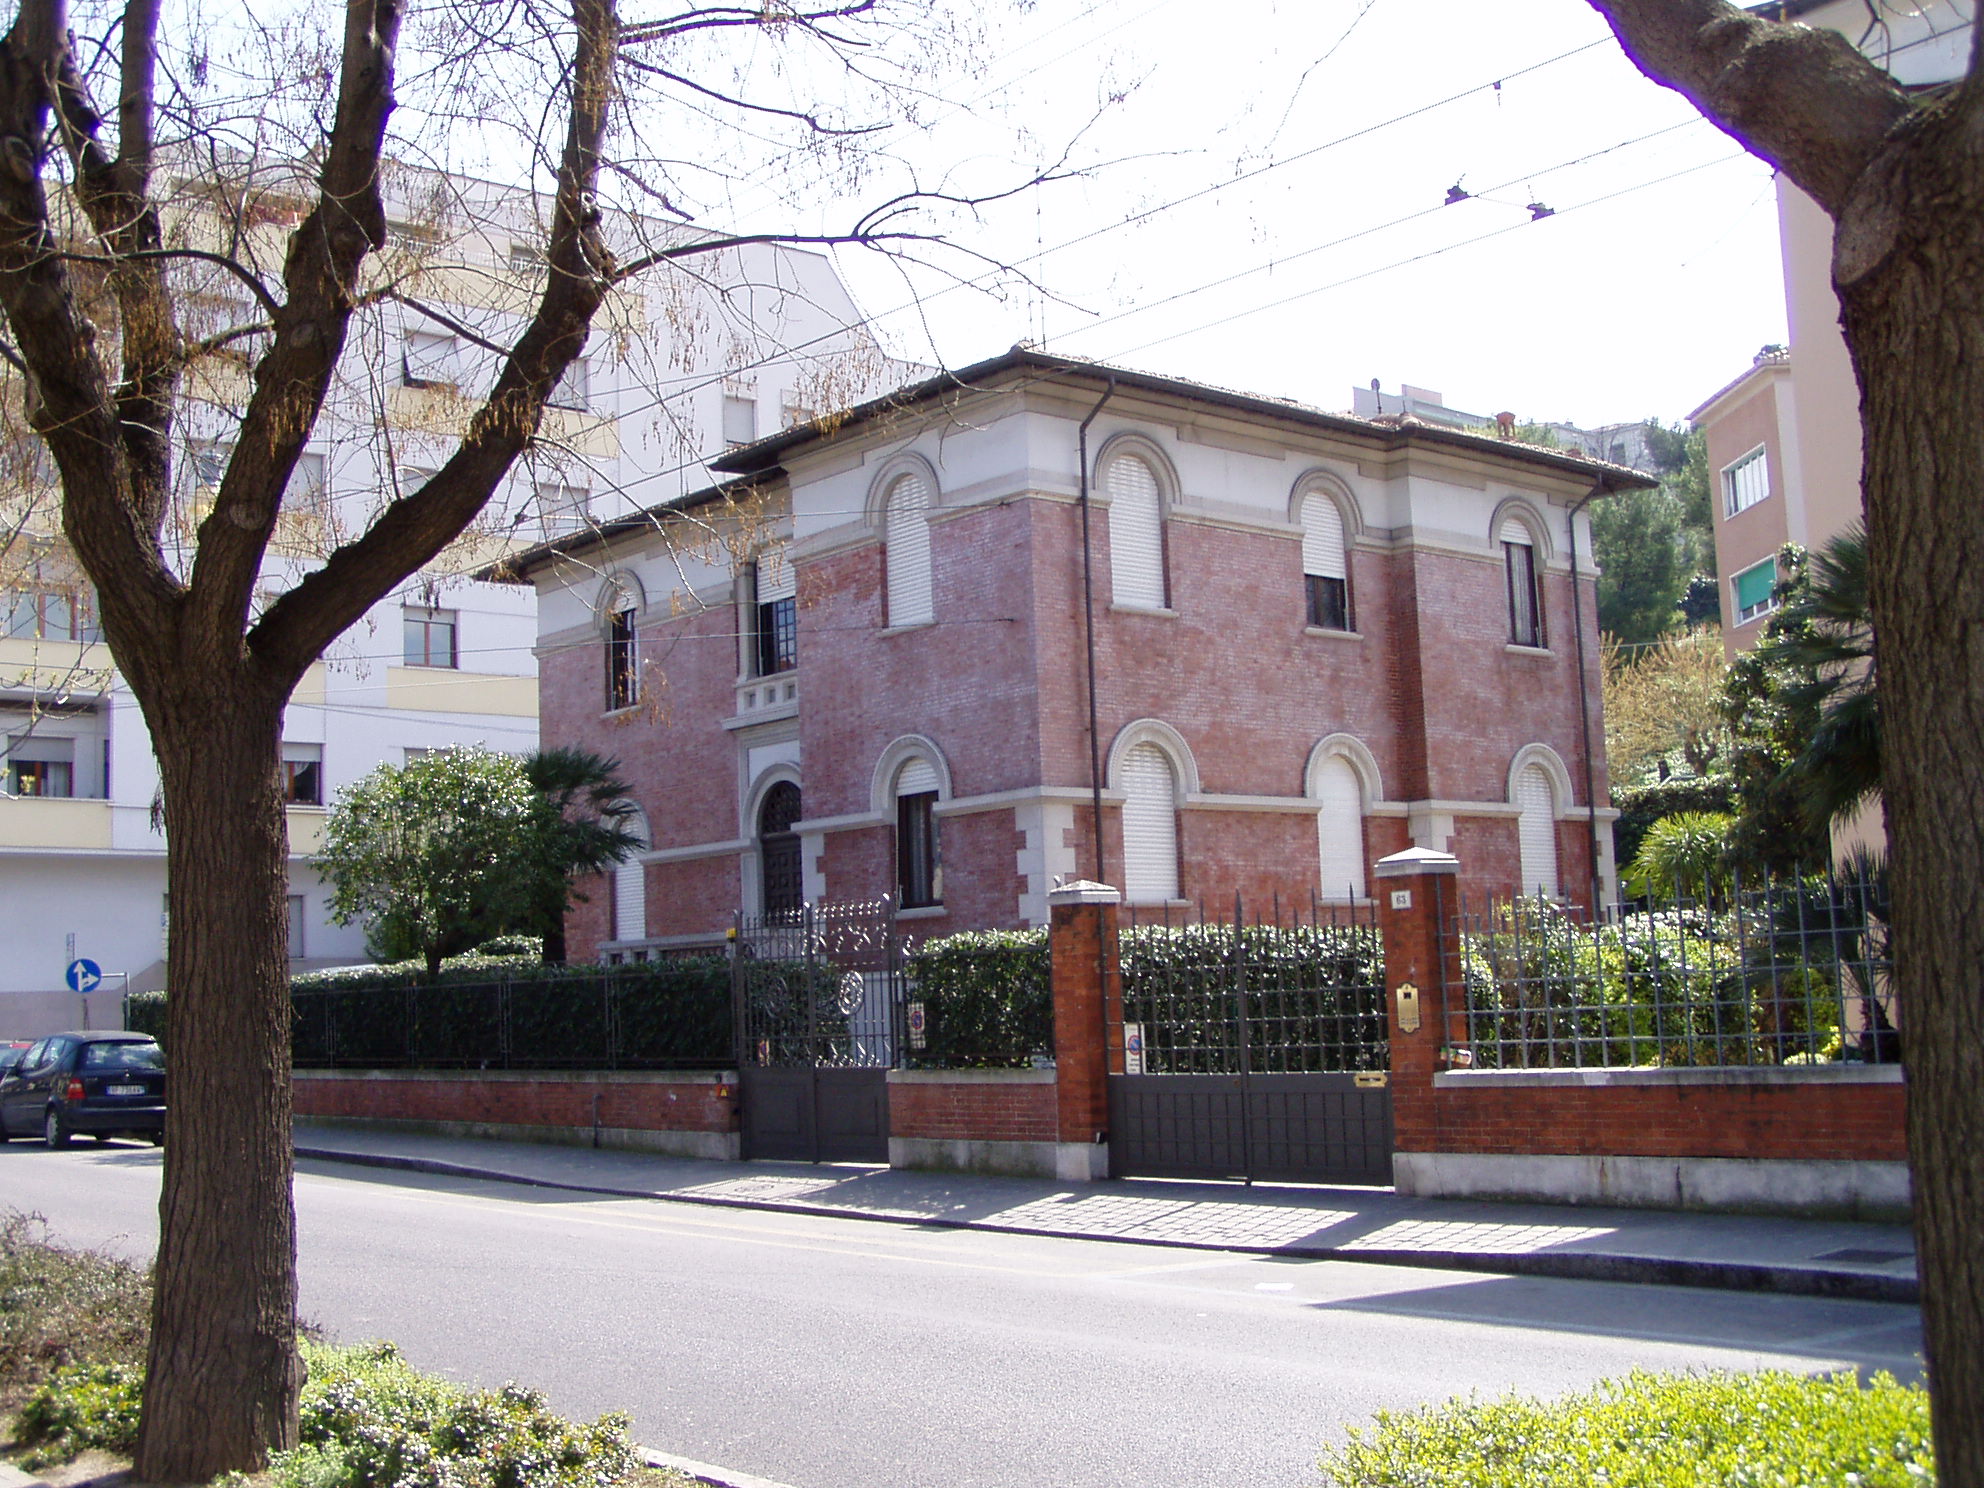 Palazzetto in stile neoclassico (palazzetto) - Ancona (AN) 